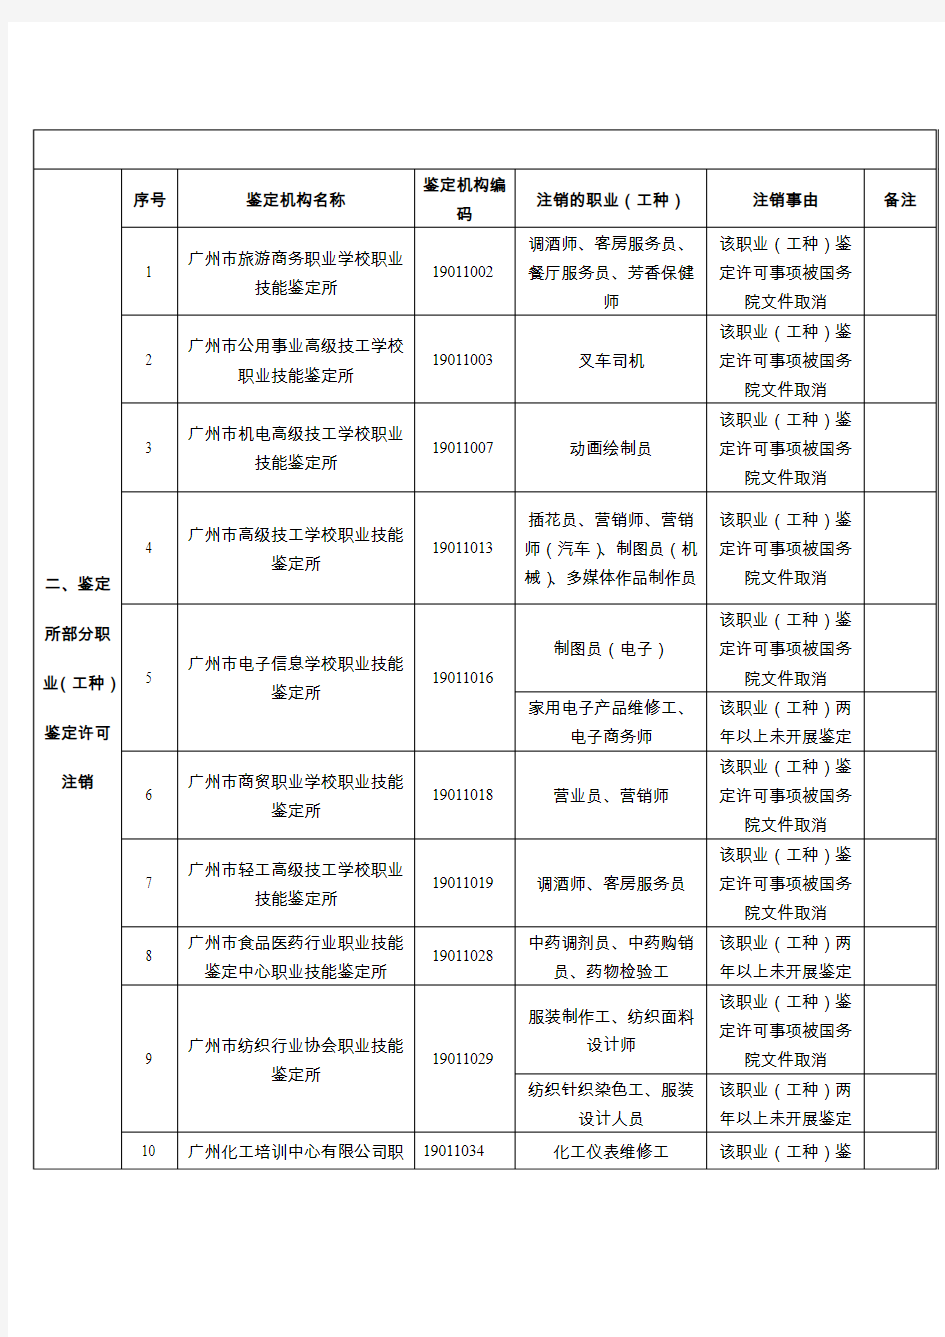 职业技能鉴定所职业工种-广州职业技能鉴定指导中心